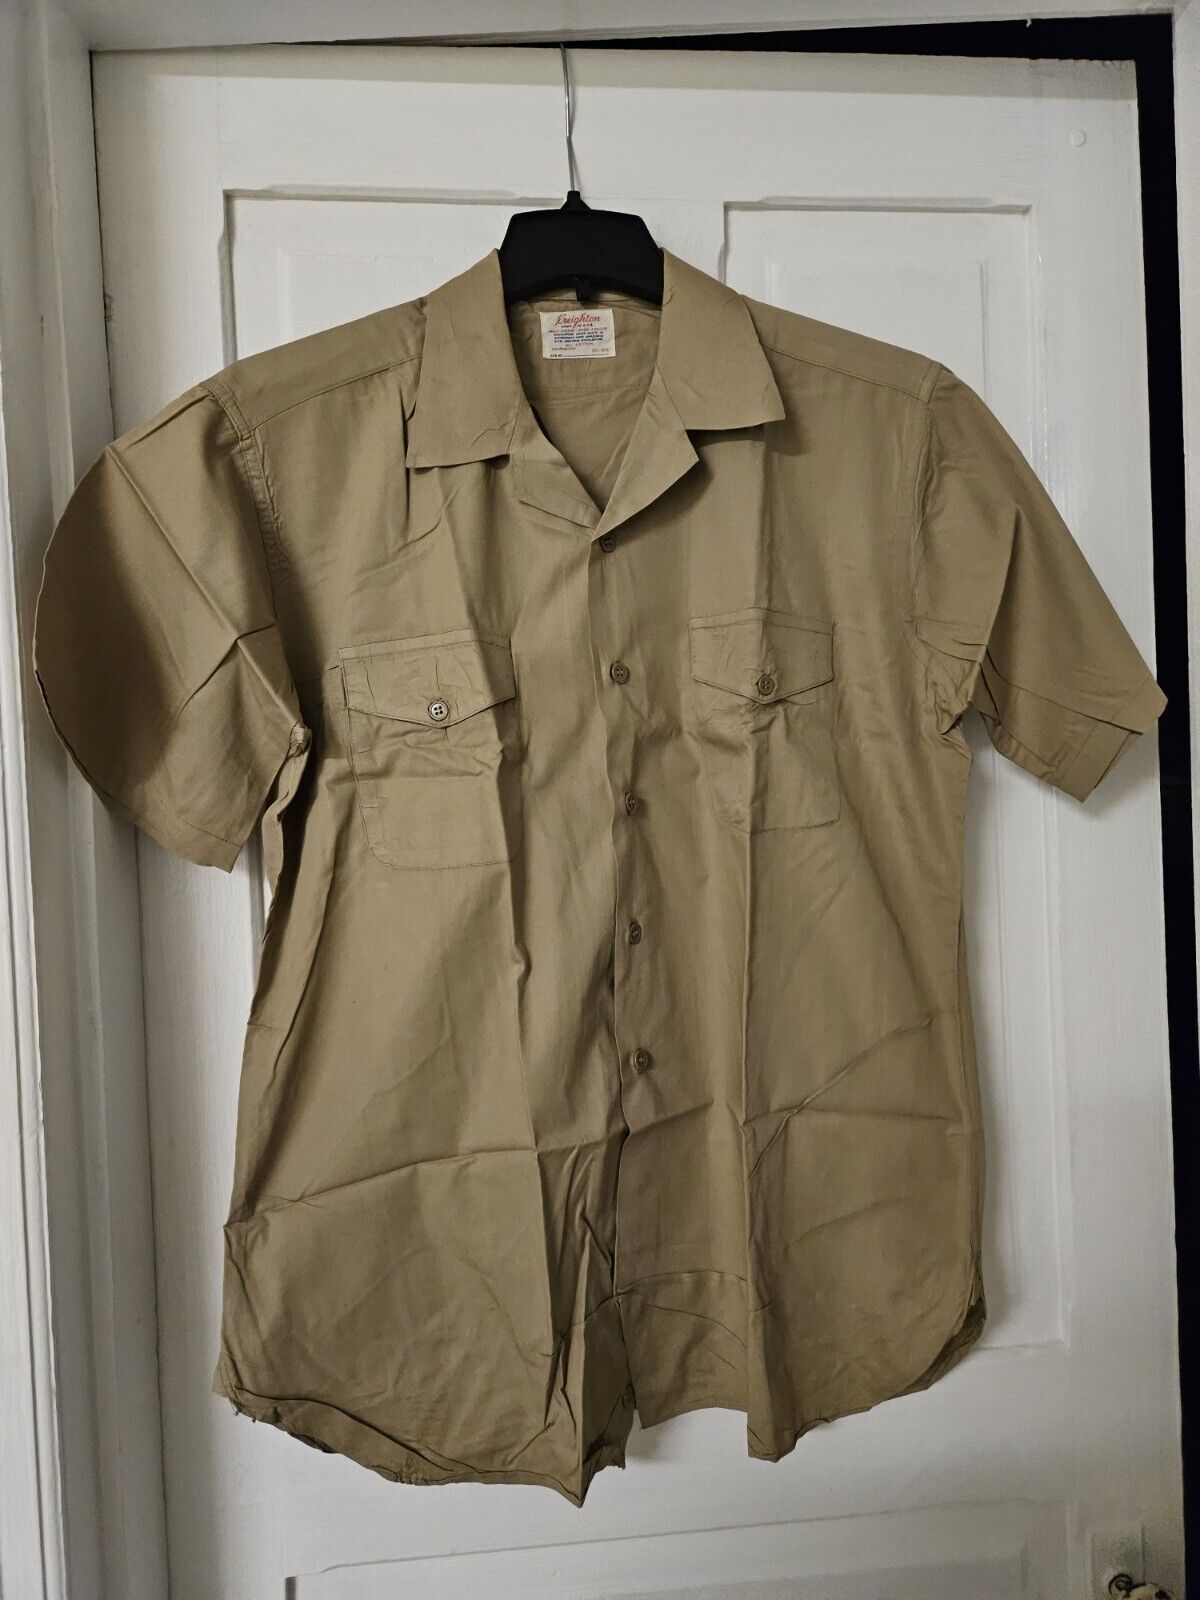 Vintage Creighton Men\'s Khaki Short Sleeve Navy Uniform Shirt Size 16 L 16 1/2